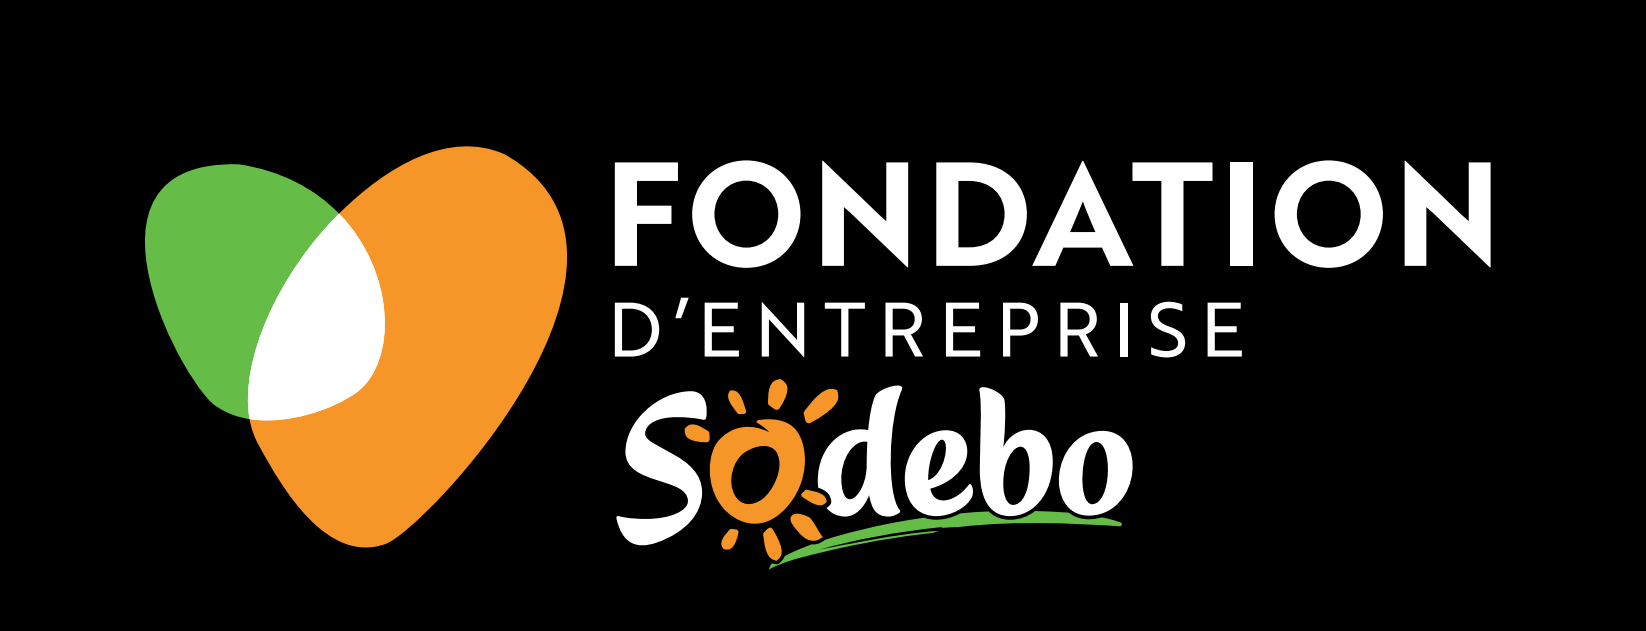 Fondation d'entreprise SODEBO